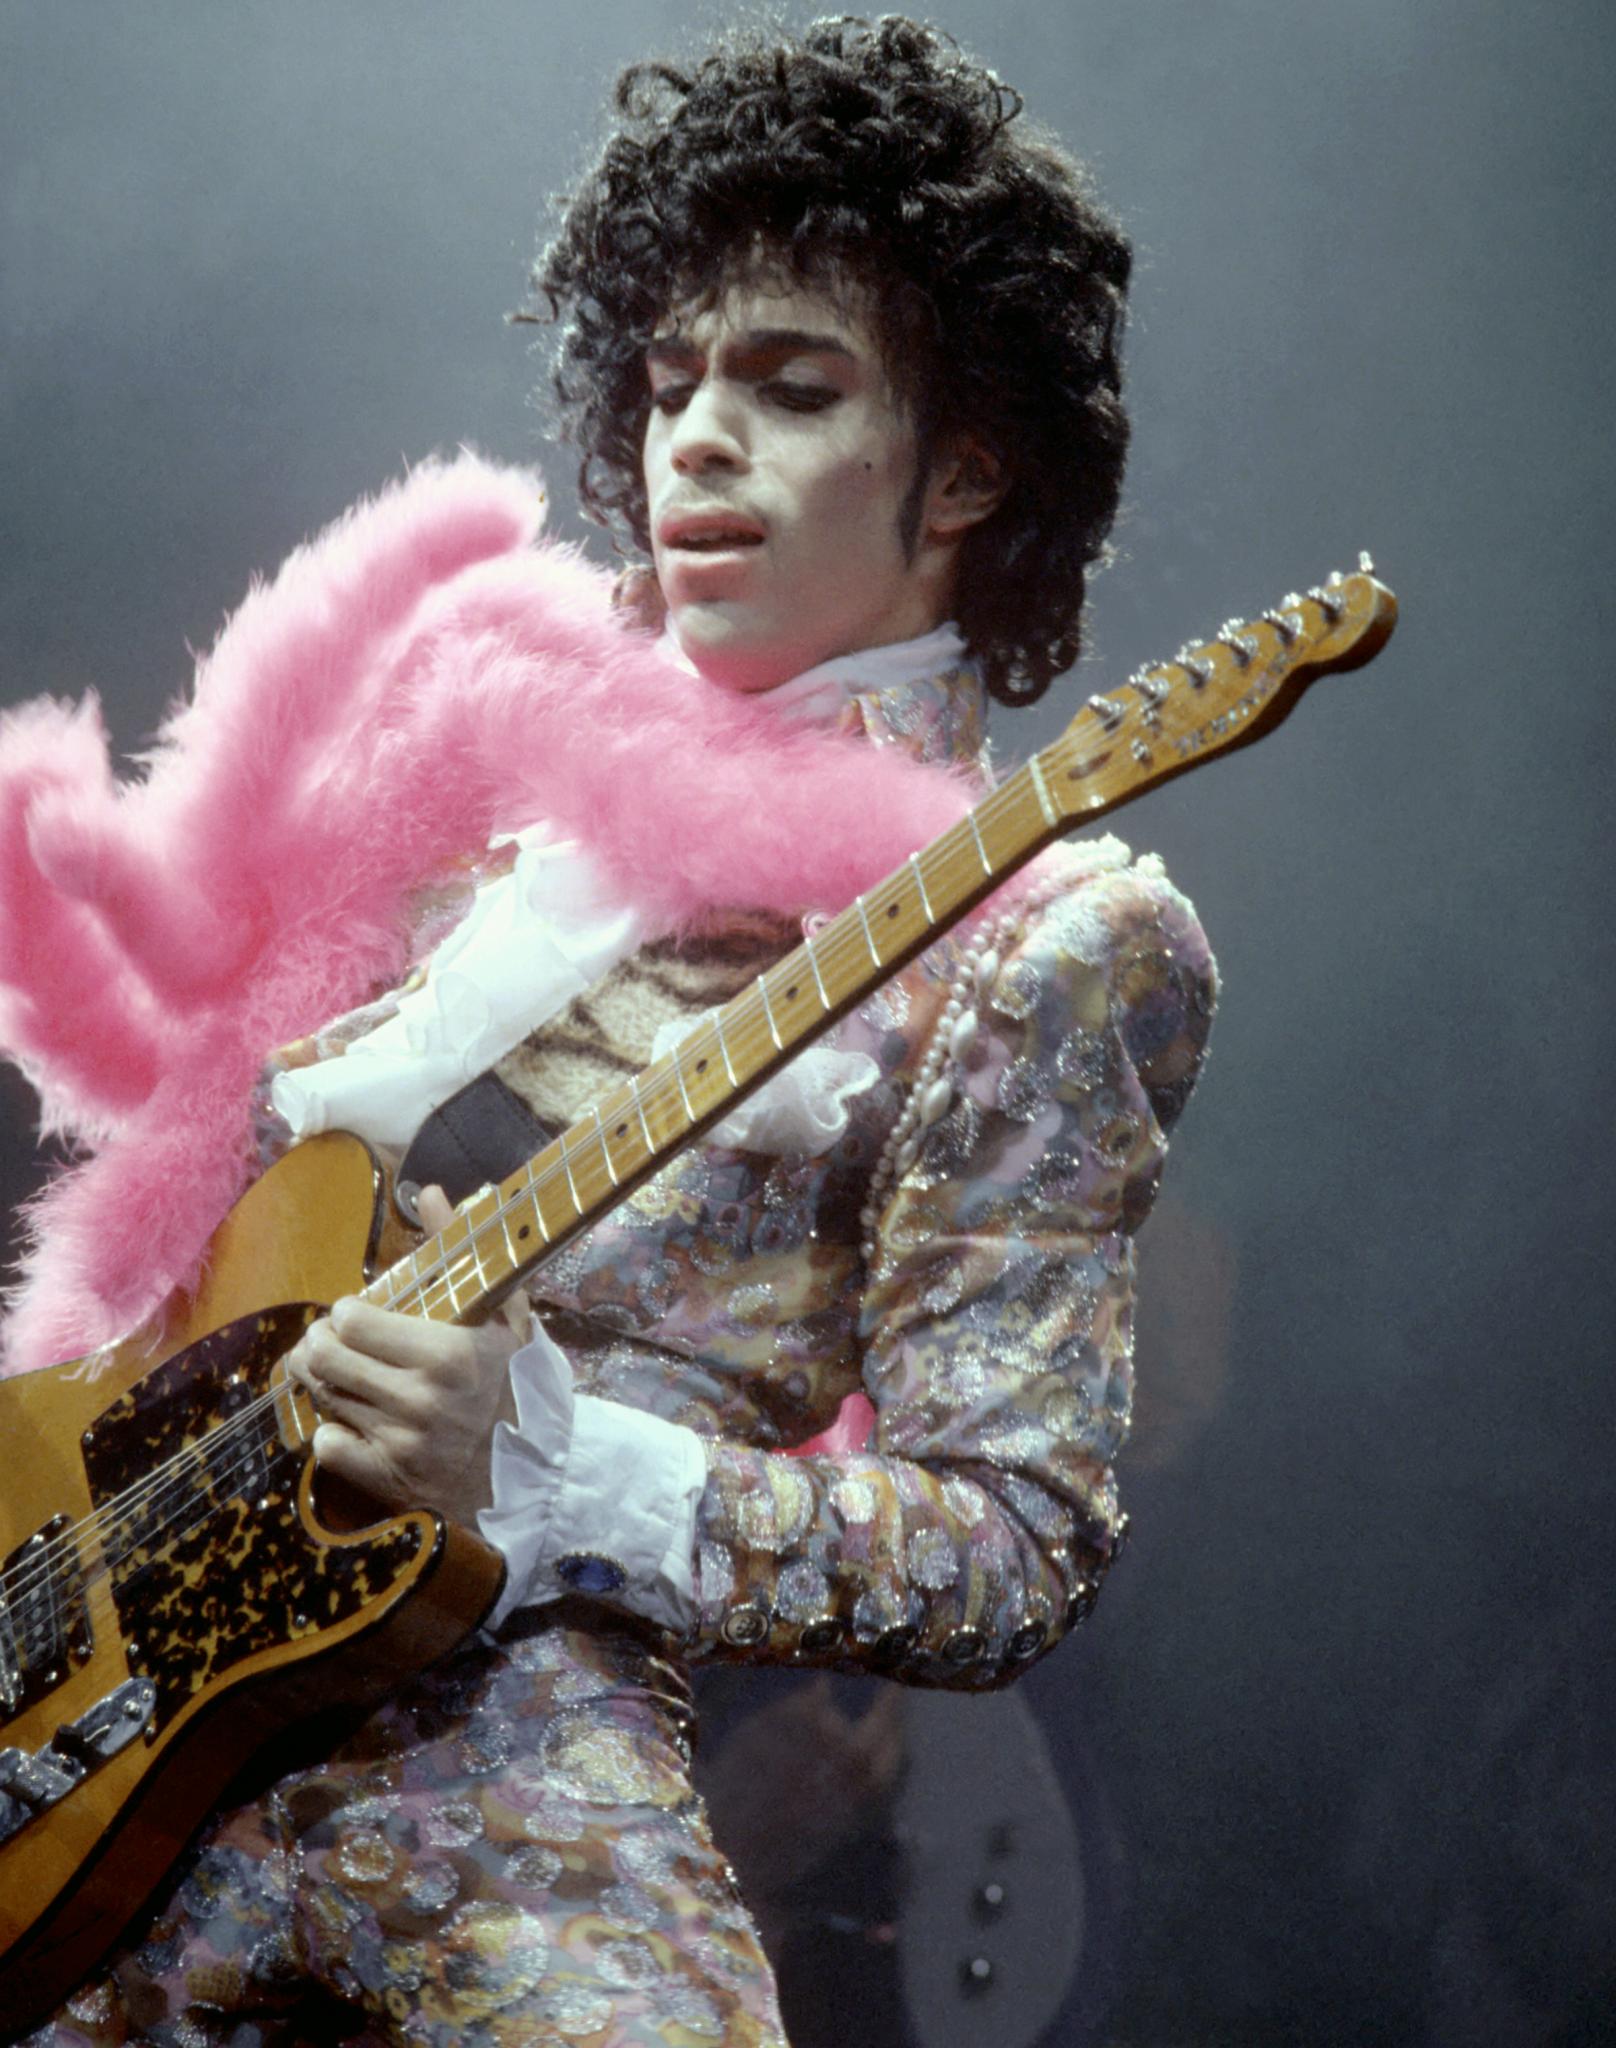 RIP Prince: A Life in Photos
